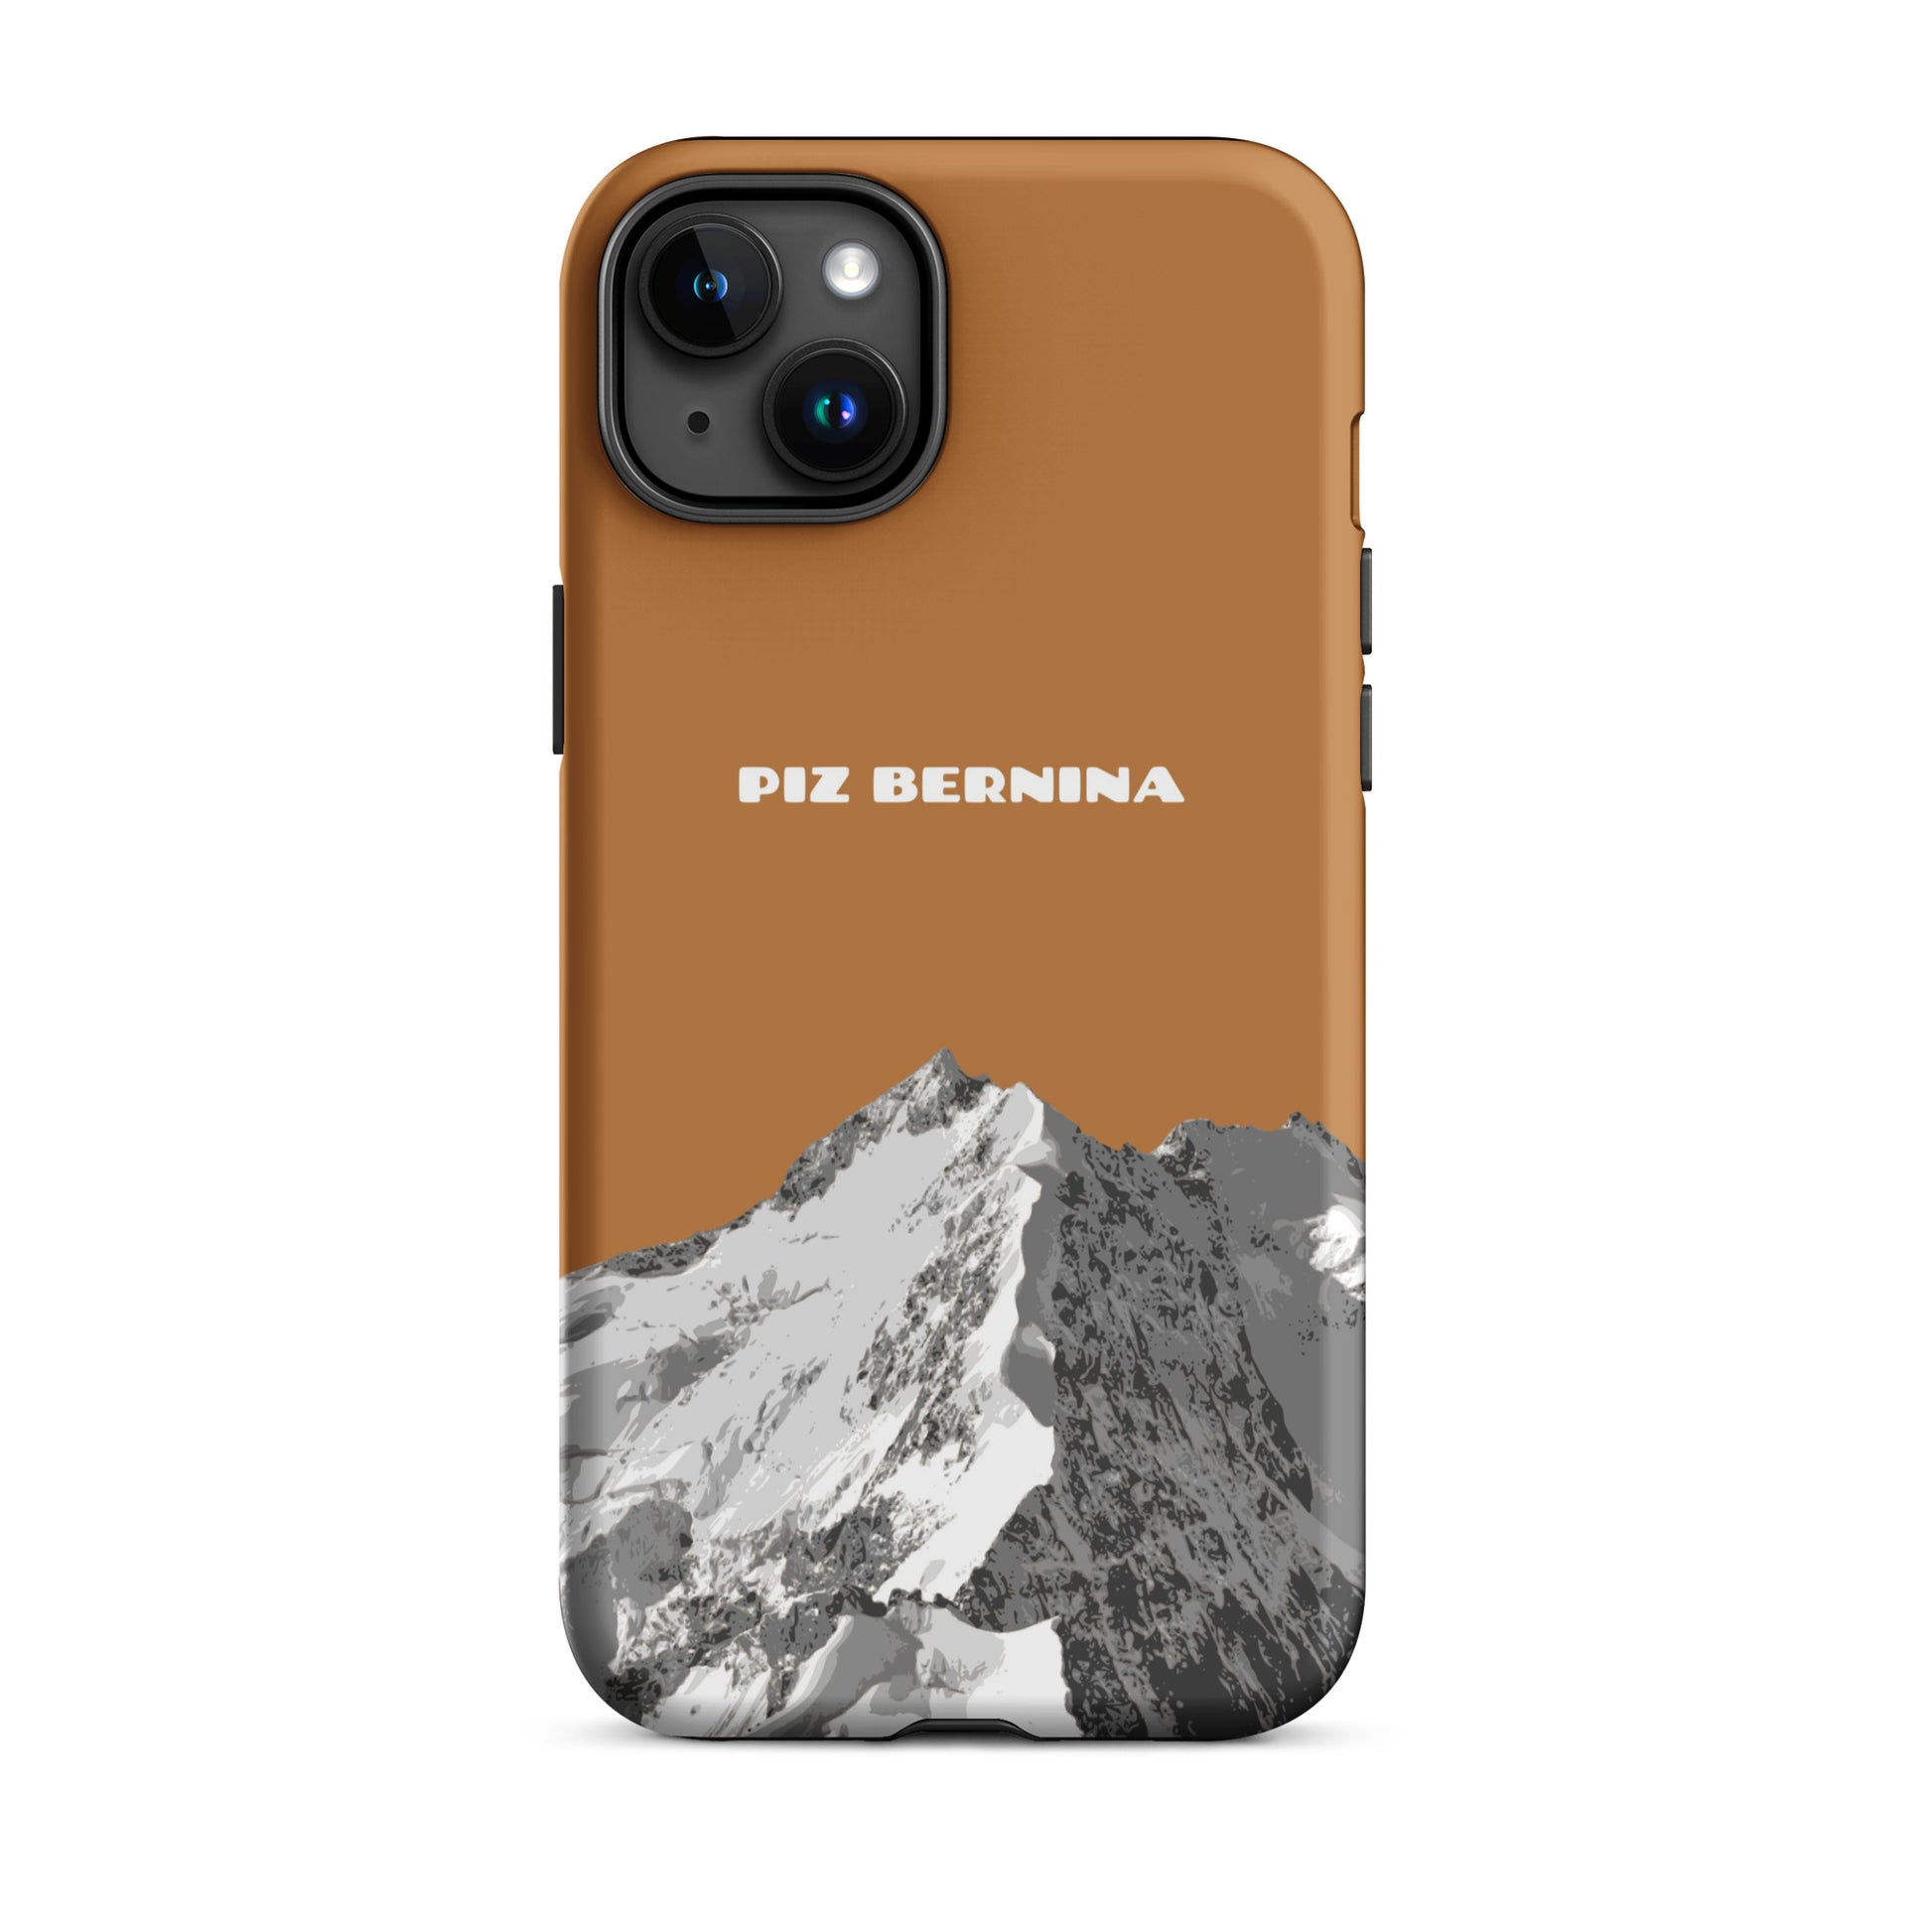 Hülle für das iPhone 15 Plus von Apple in der Farbe Kupfer, dass den Piz Bernina in Graubünden zeigt.